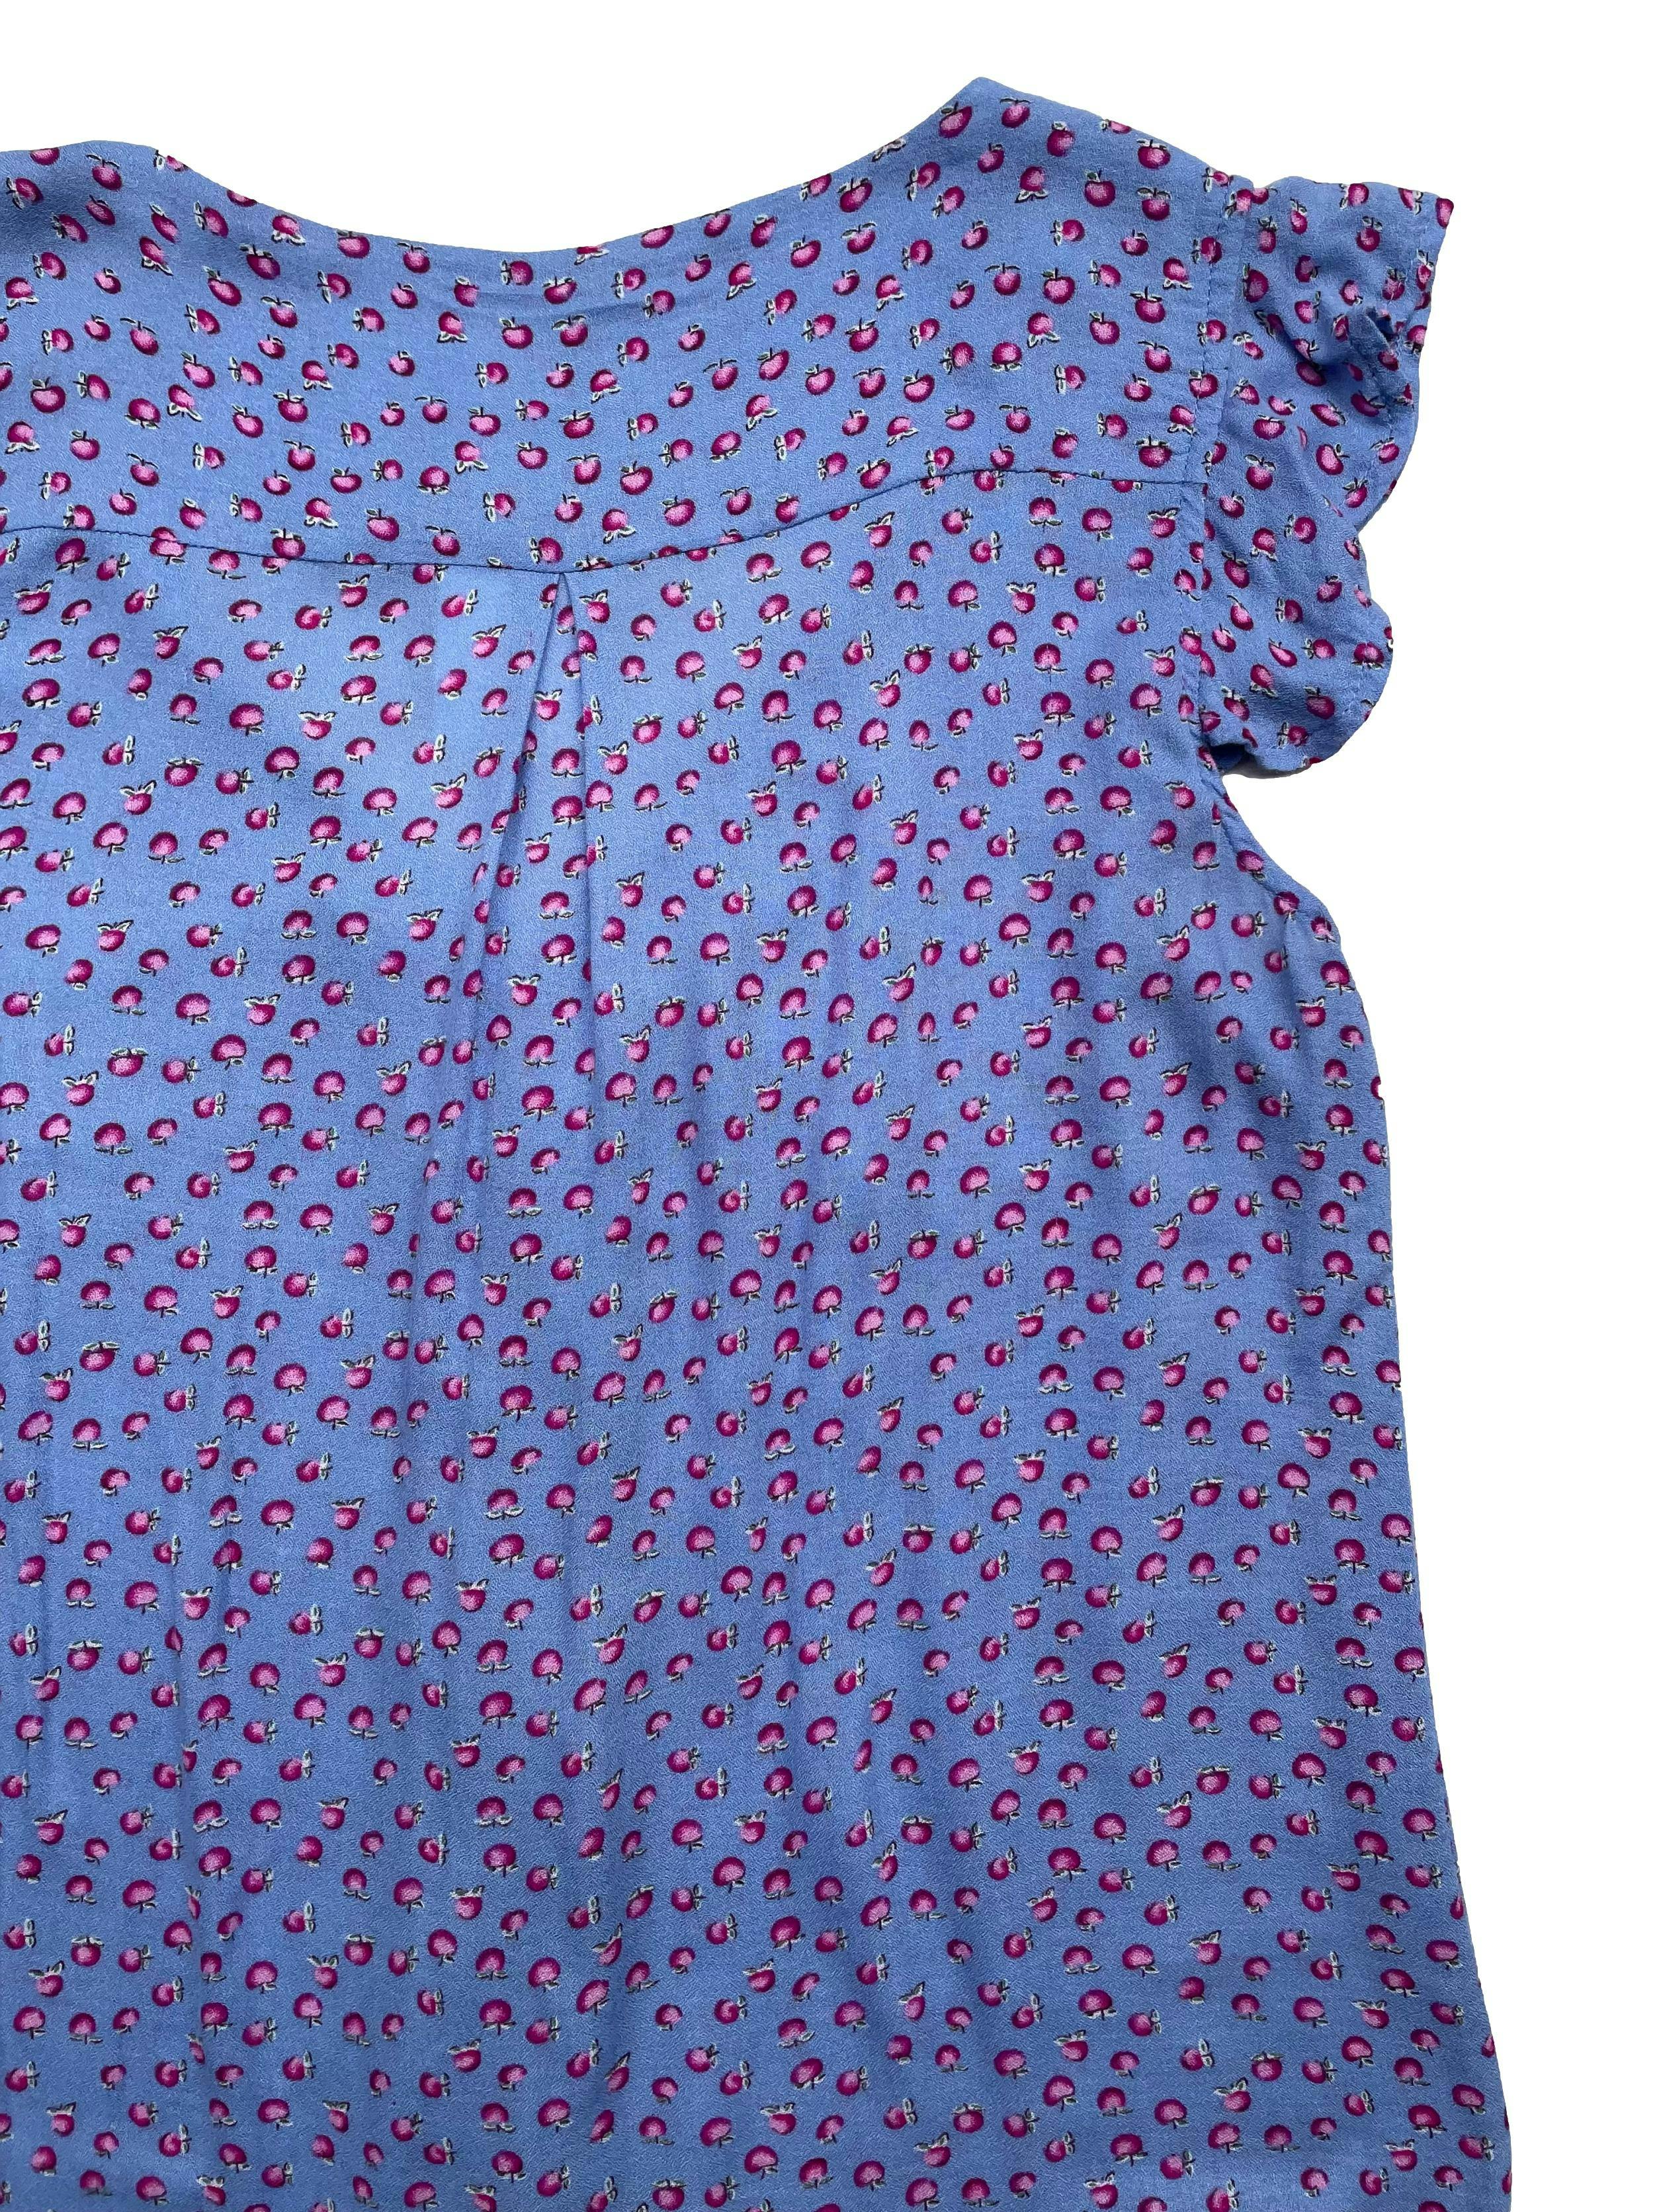 Blusa Aeropostale de chalis en color lavanda con estampado de manzanas, encaje y botones frontales, mangas tipo volantes. Busto 96cm, Largo 55cm.